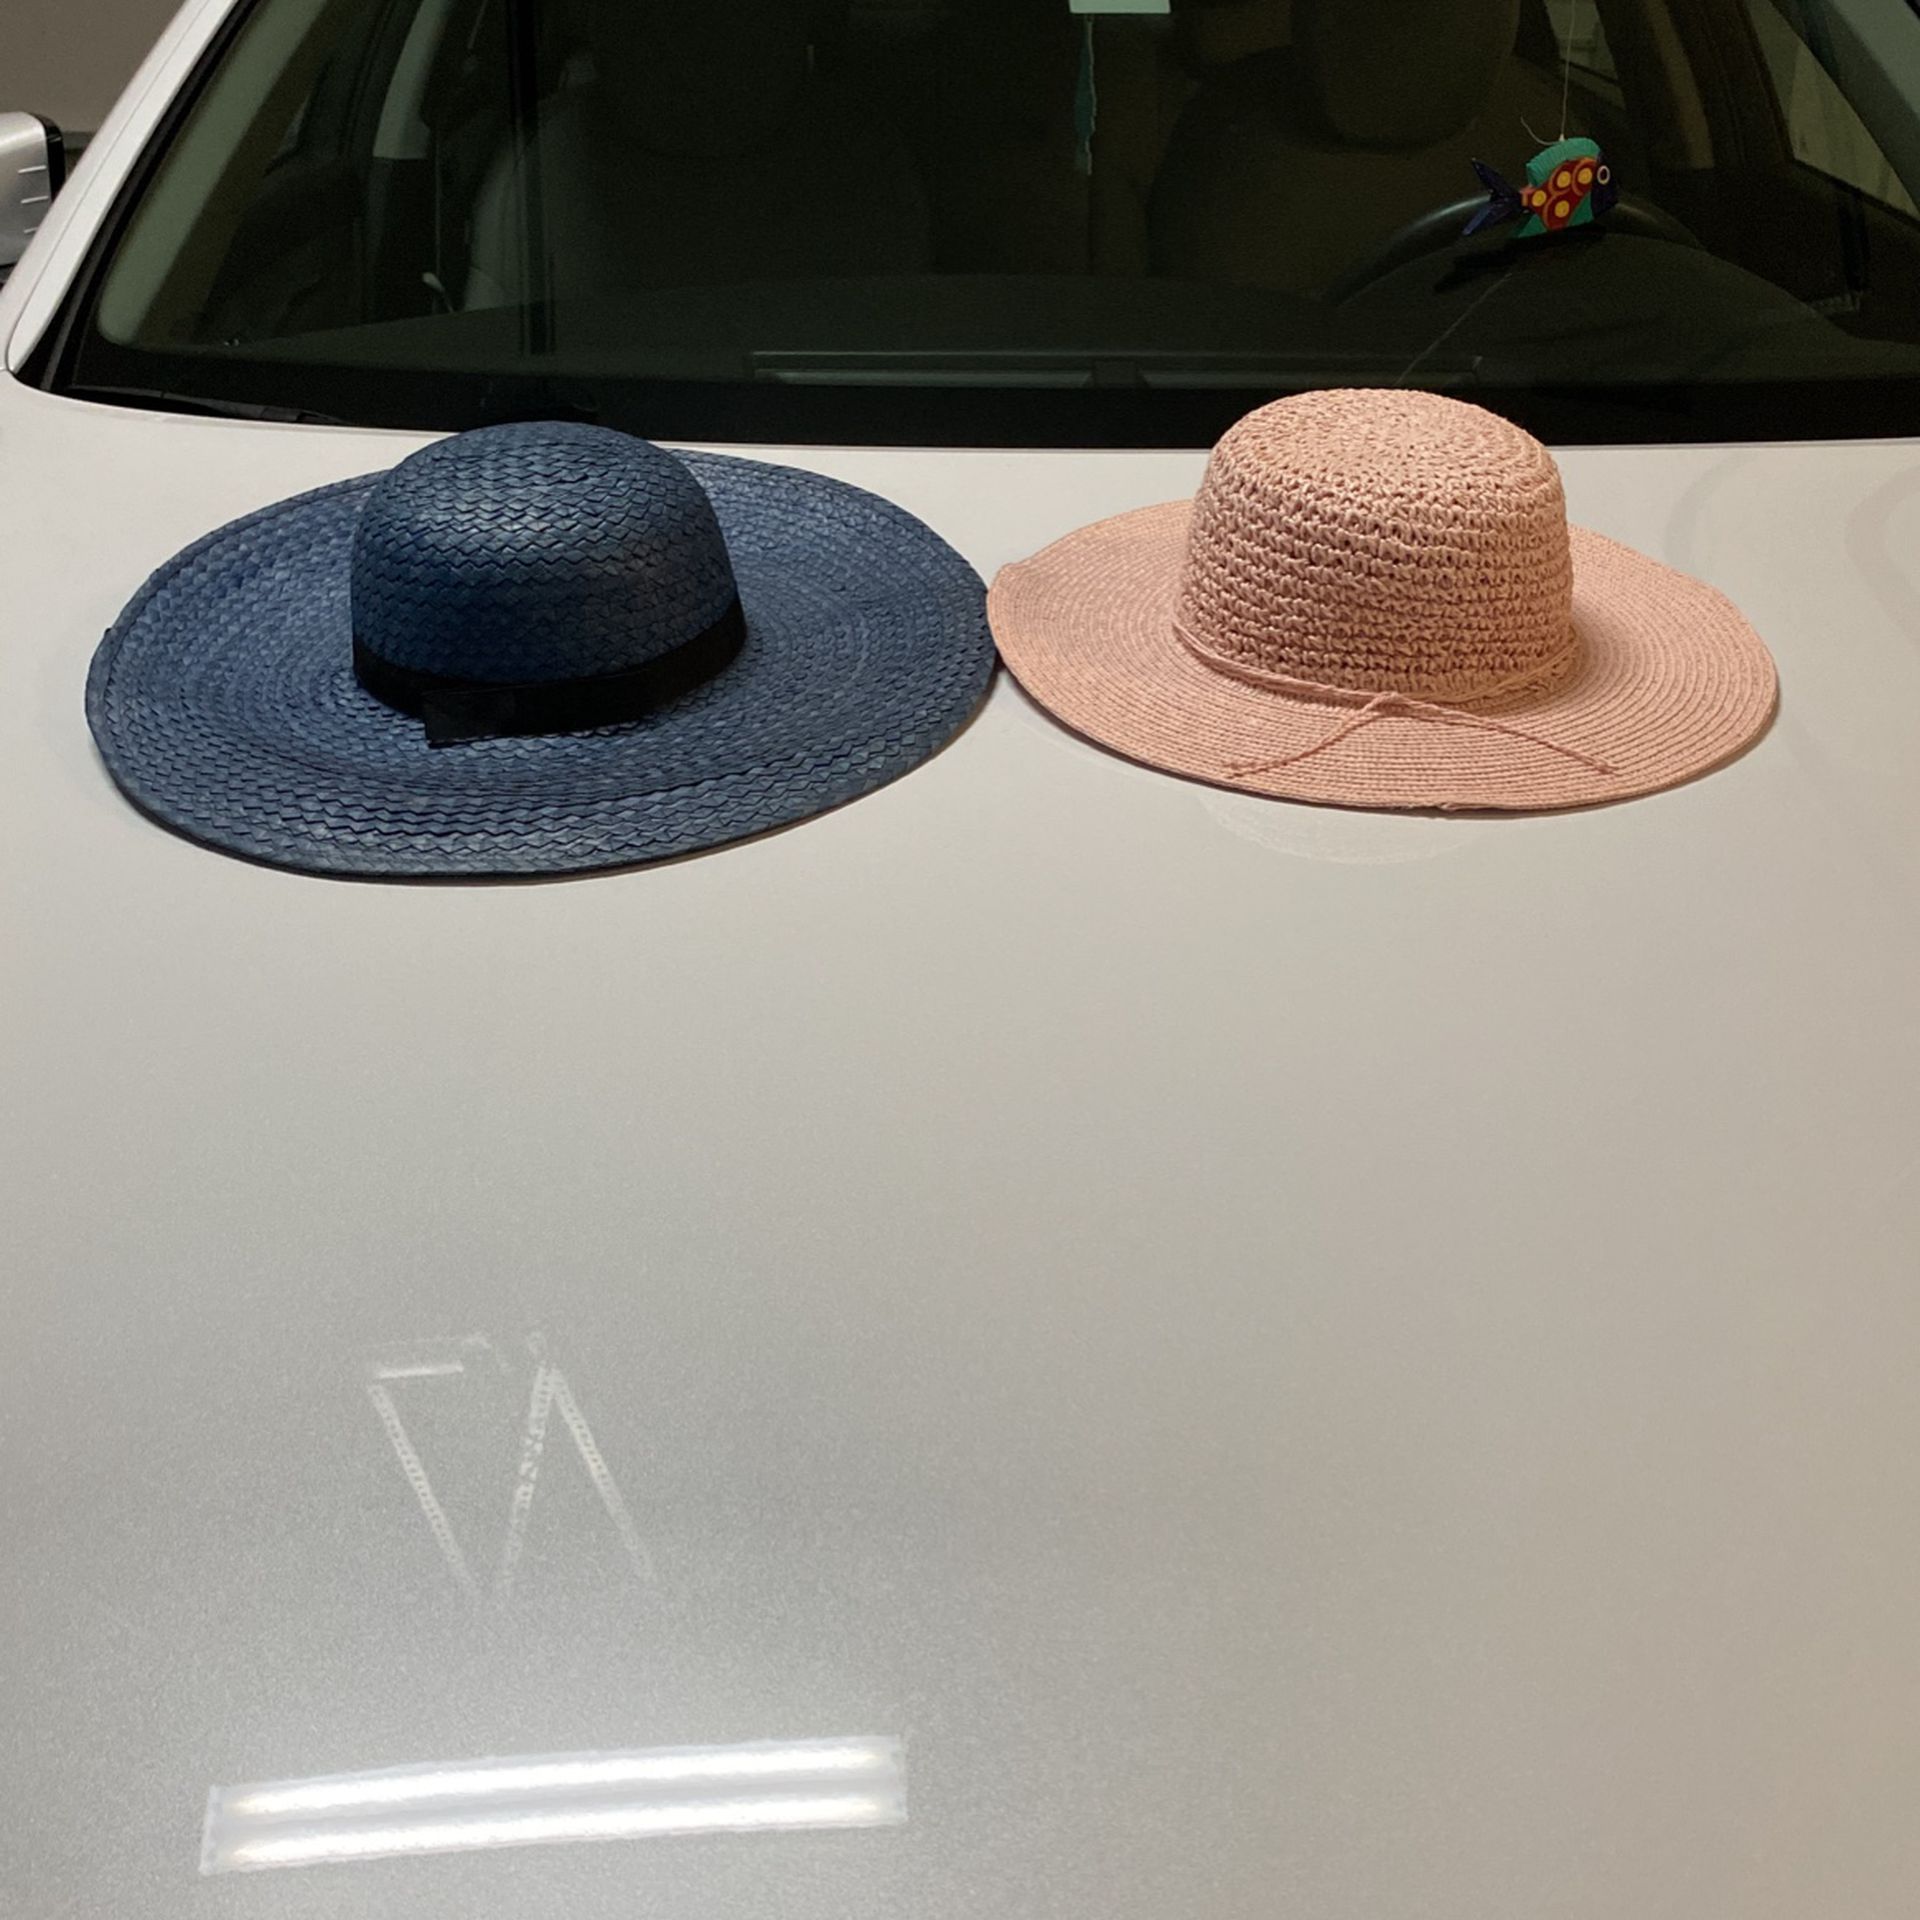 2 Sun Hats